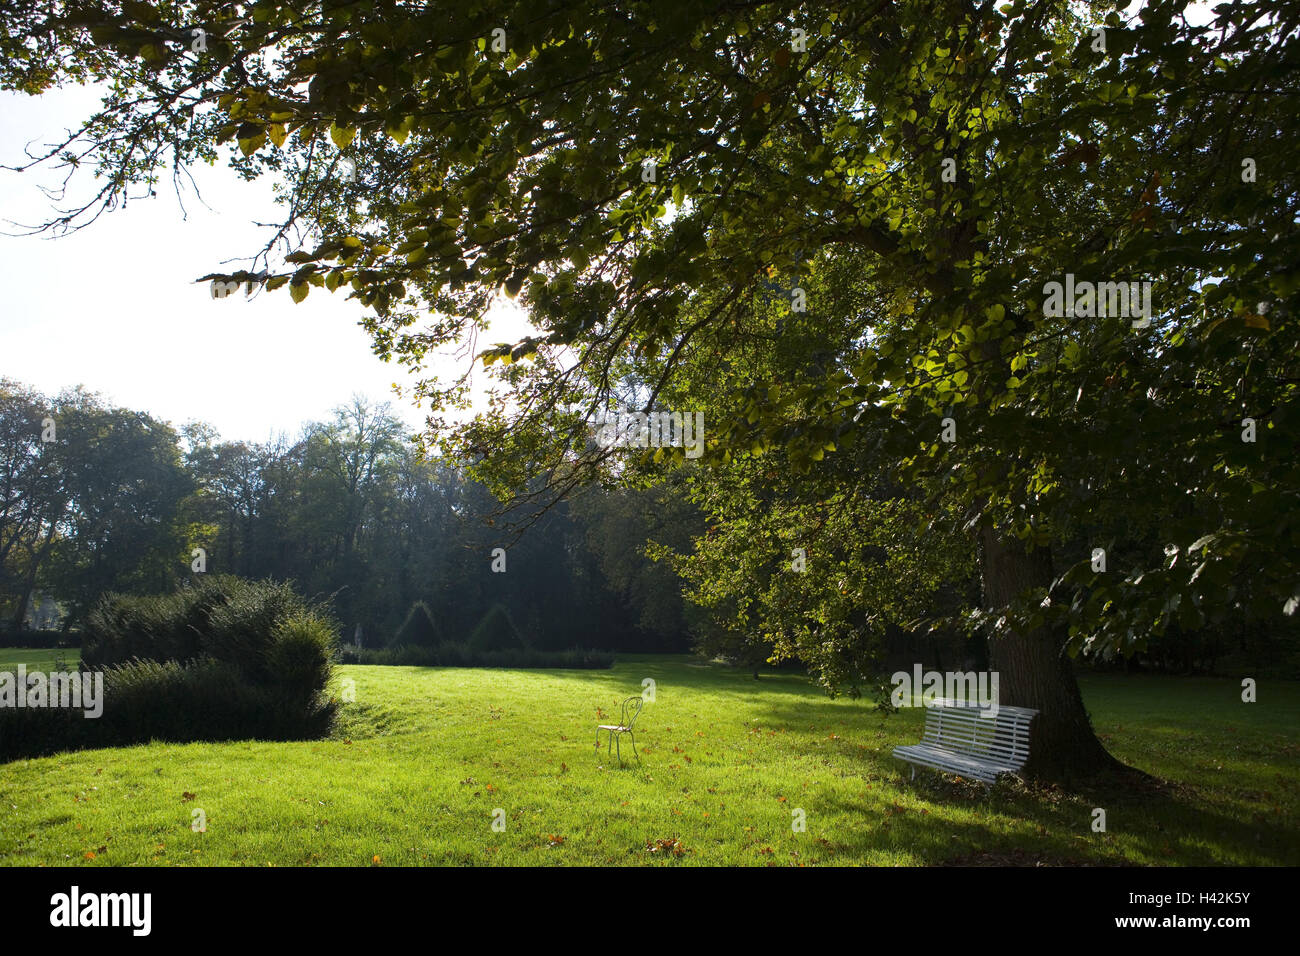 France, Burgundy, Saône-et-Loire, Chateau de Sully, castle grounds, wooden bank, autumn mood, Stock Photo